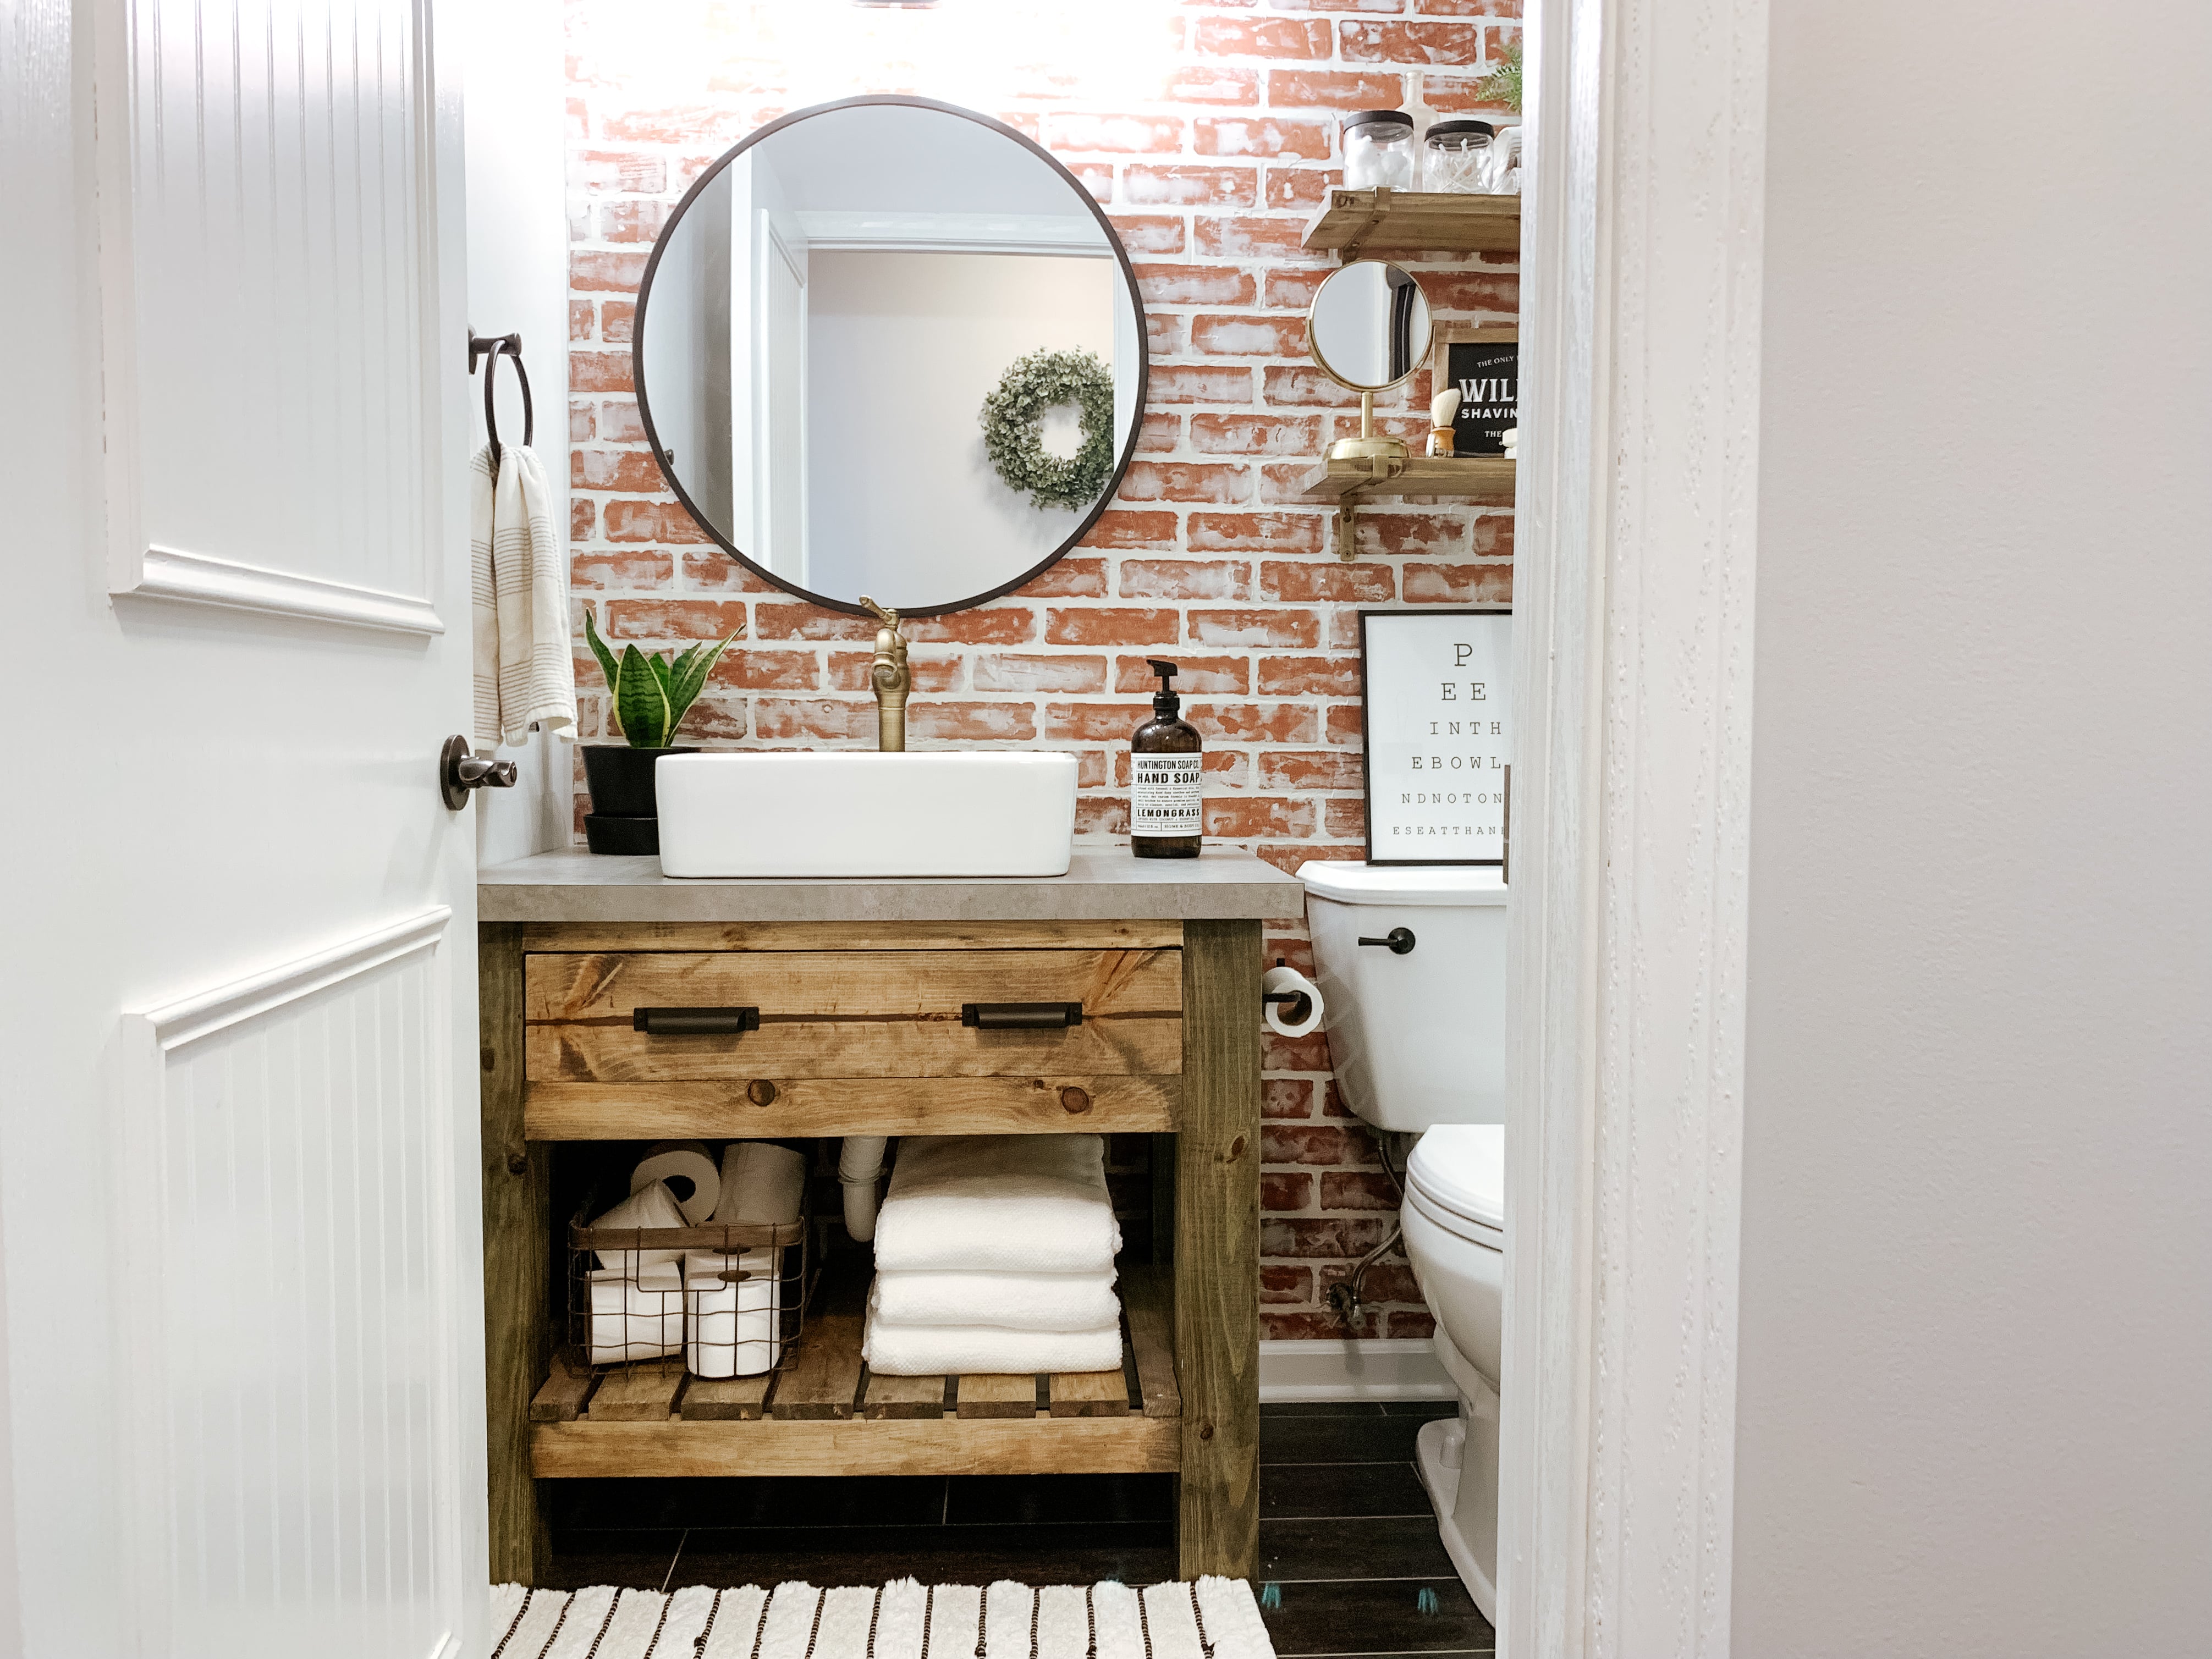 Diy Rustic Bathroom Vanity Sammy On State - Diy Rustic Bathroom Vanity Ideas